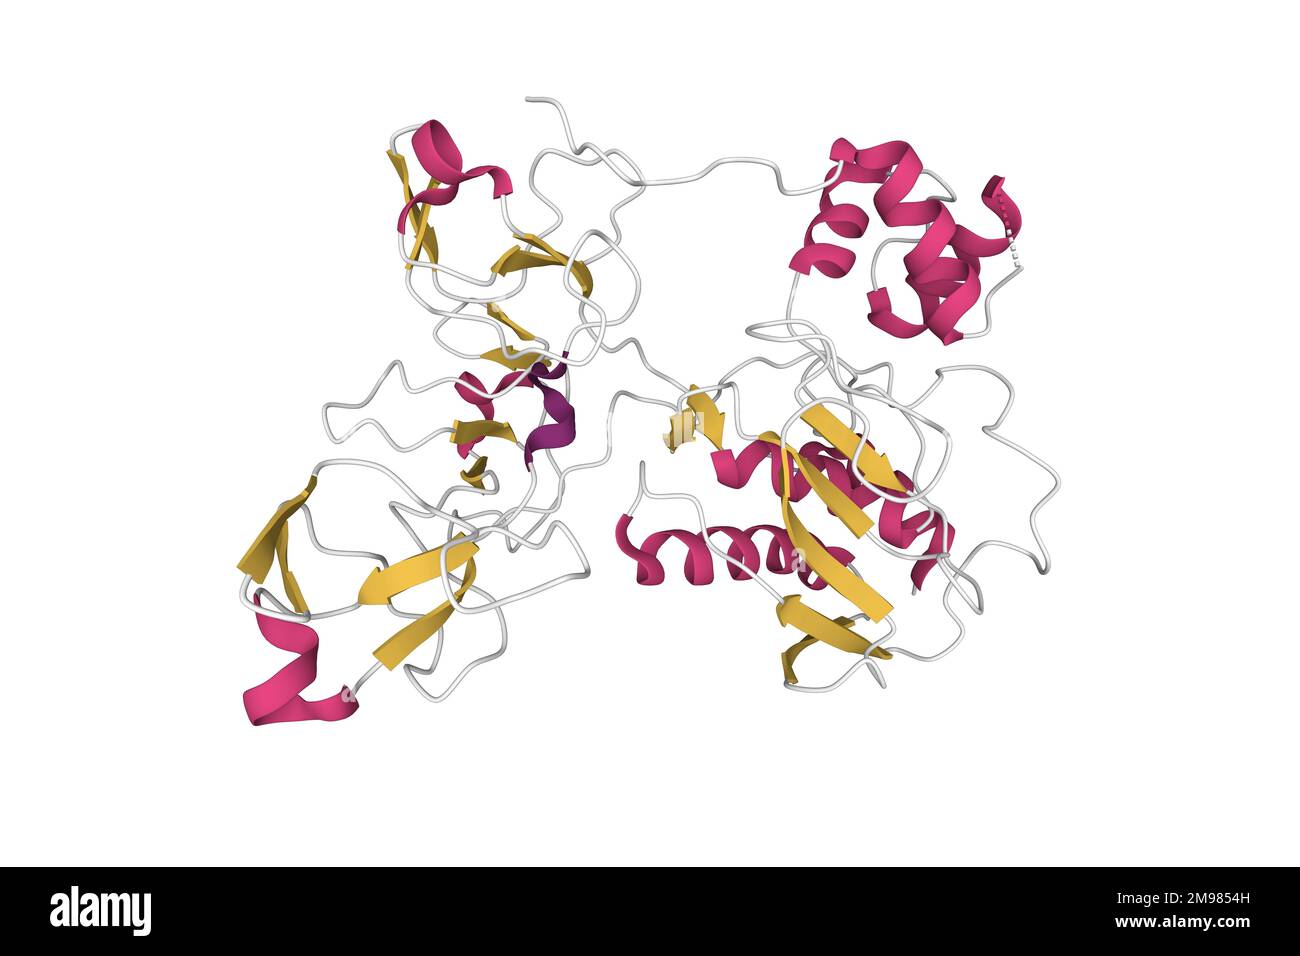 Struktur der humanen Matrixmetalloproteinase MMP9 (Gelatinase B). 3D-Cartoon-Modell, Farbschema der sekundären Struktur, PDB 1l6j, weißer Hintergrund Stockfoto